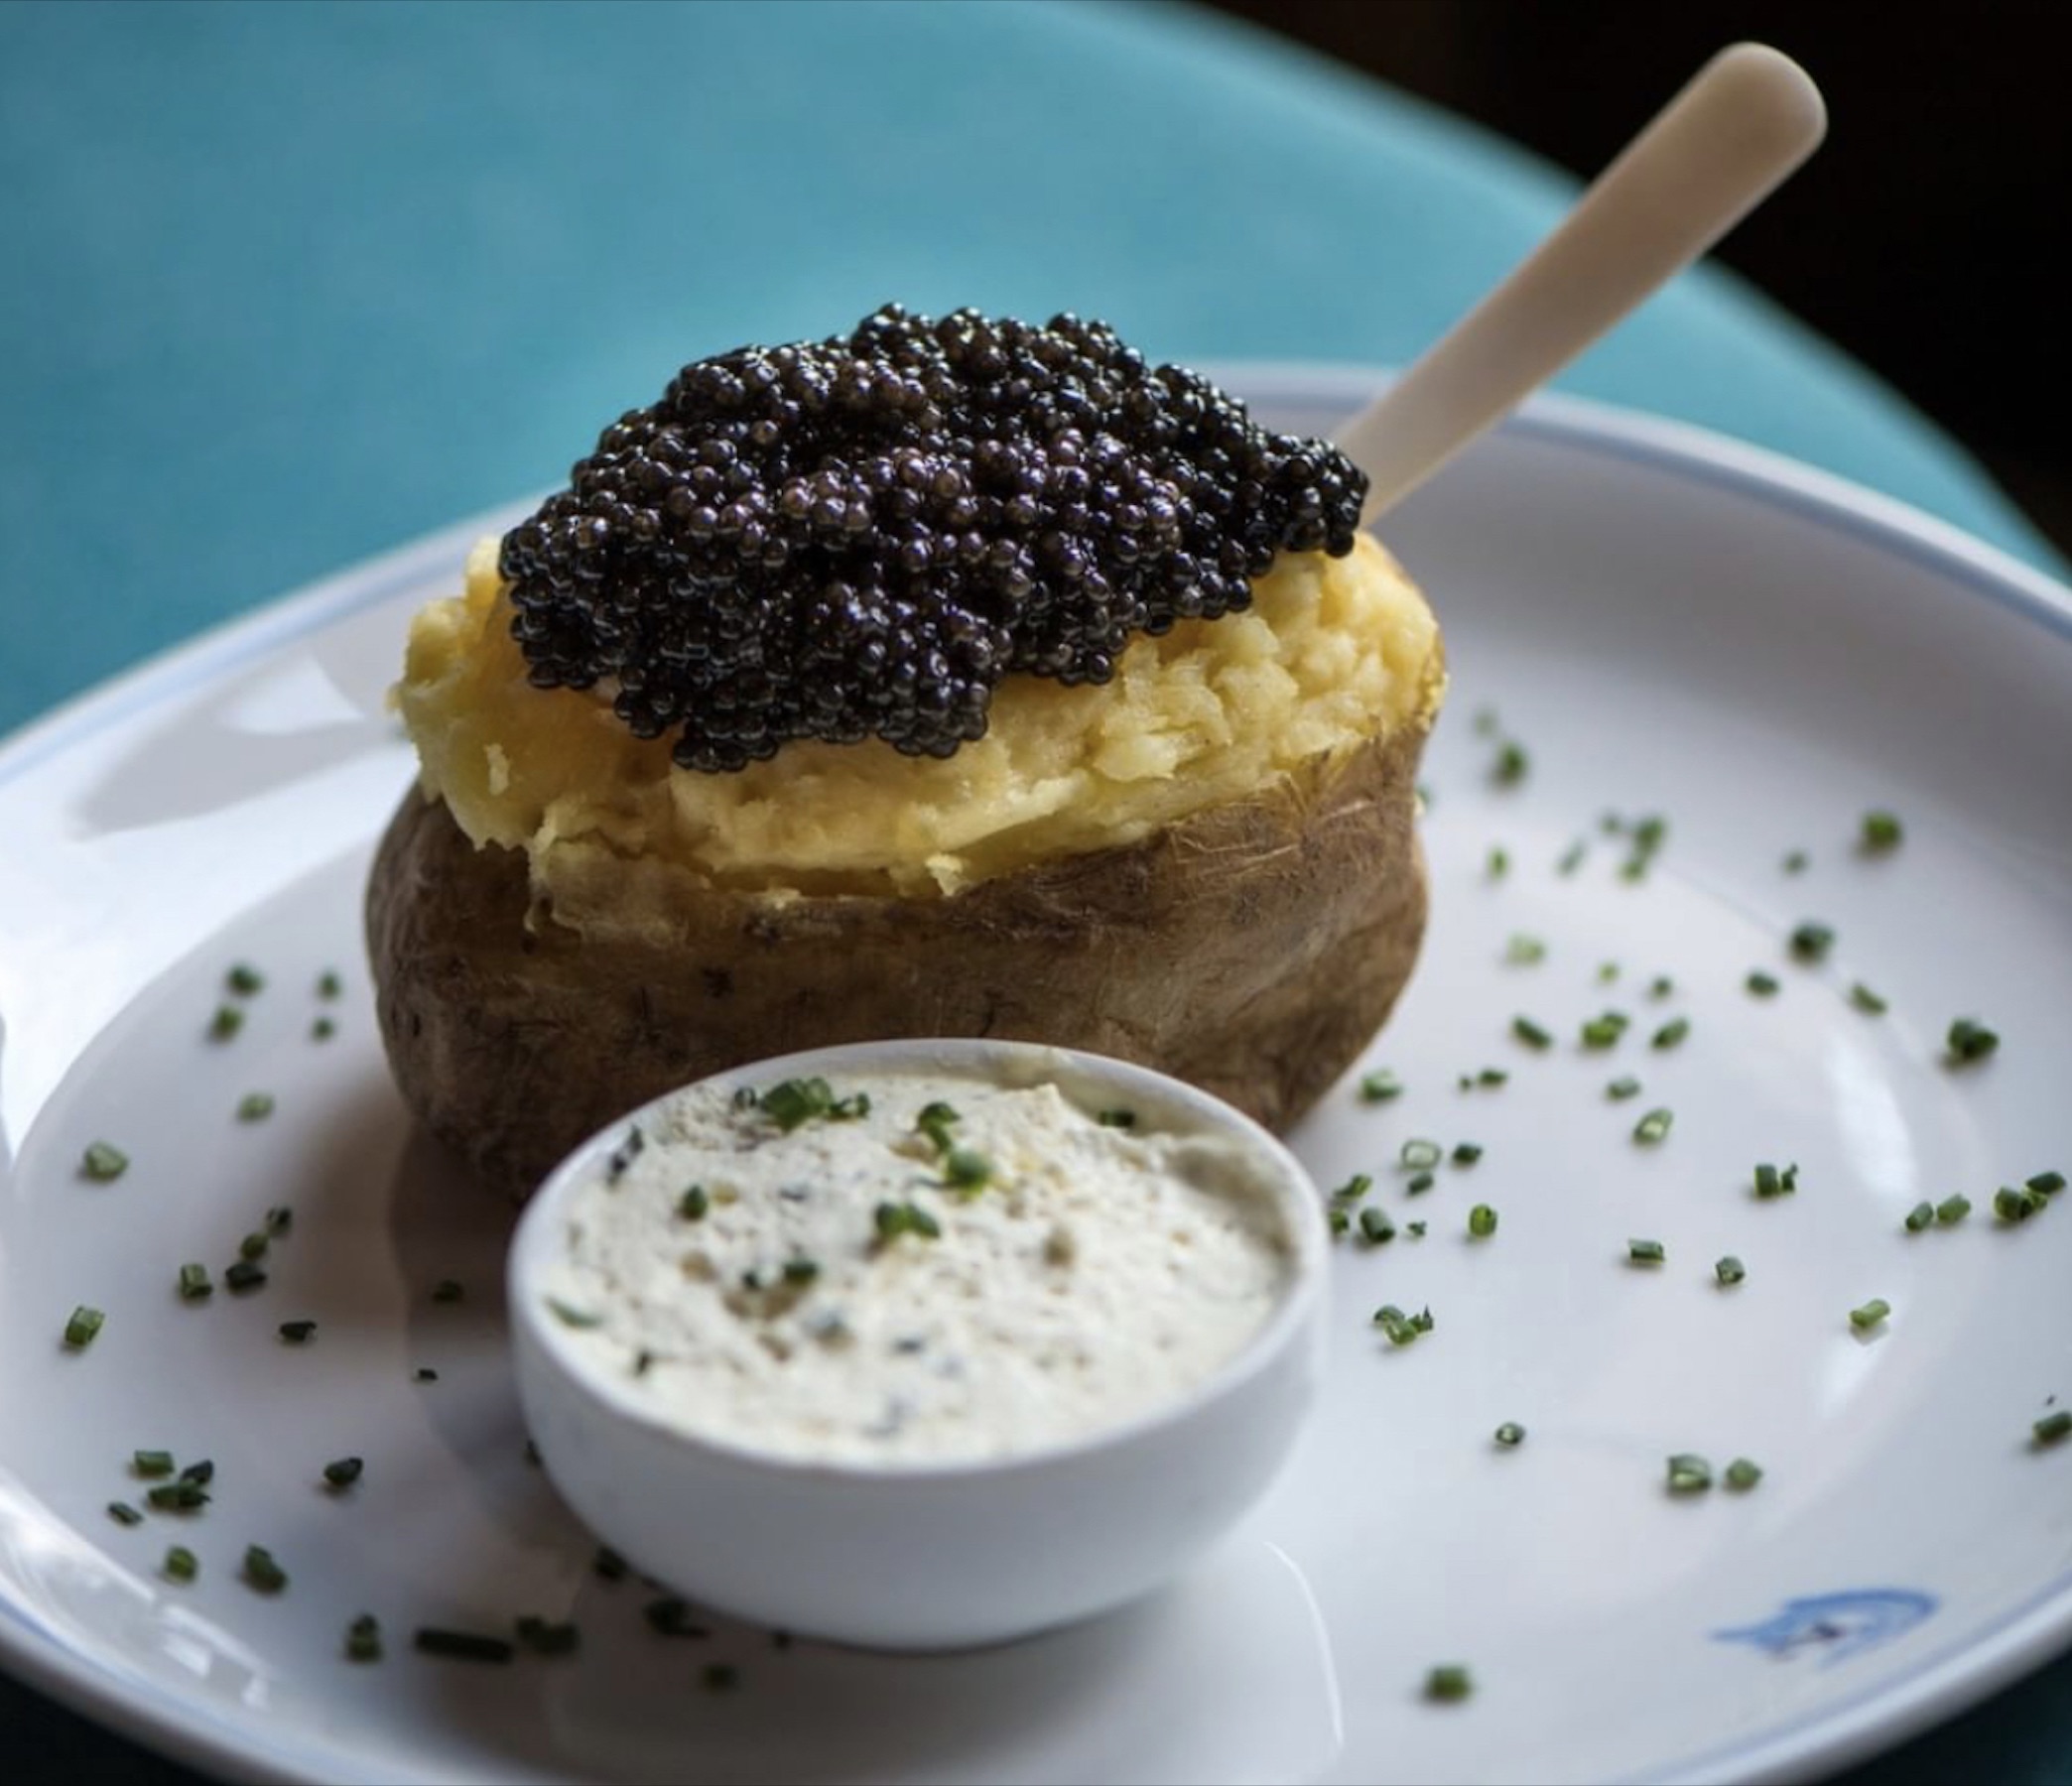 Caviar Kaspia London